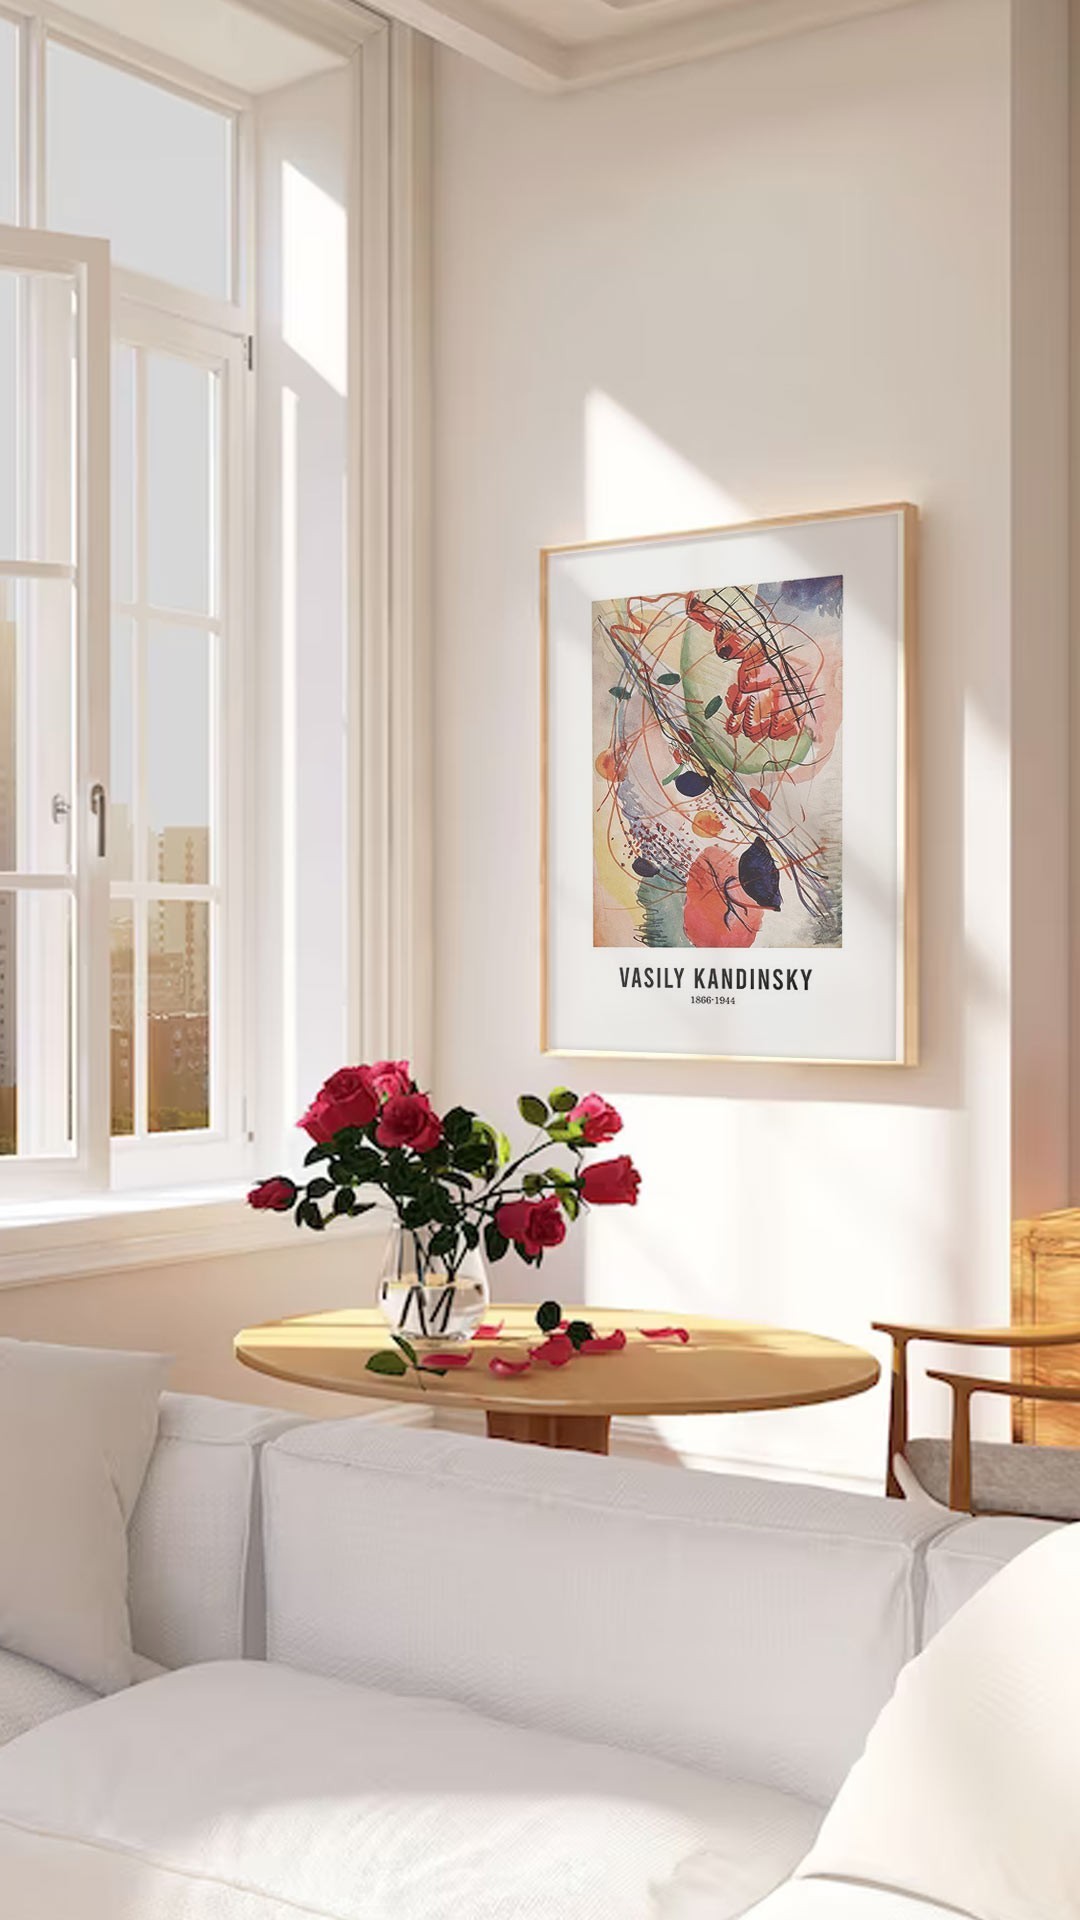 Αφίσες-Poster με έργα του Kandinsky